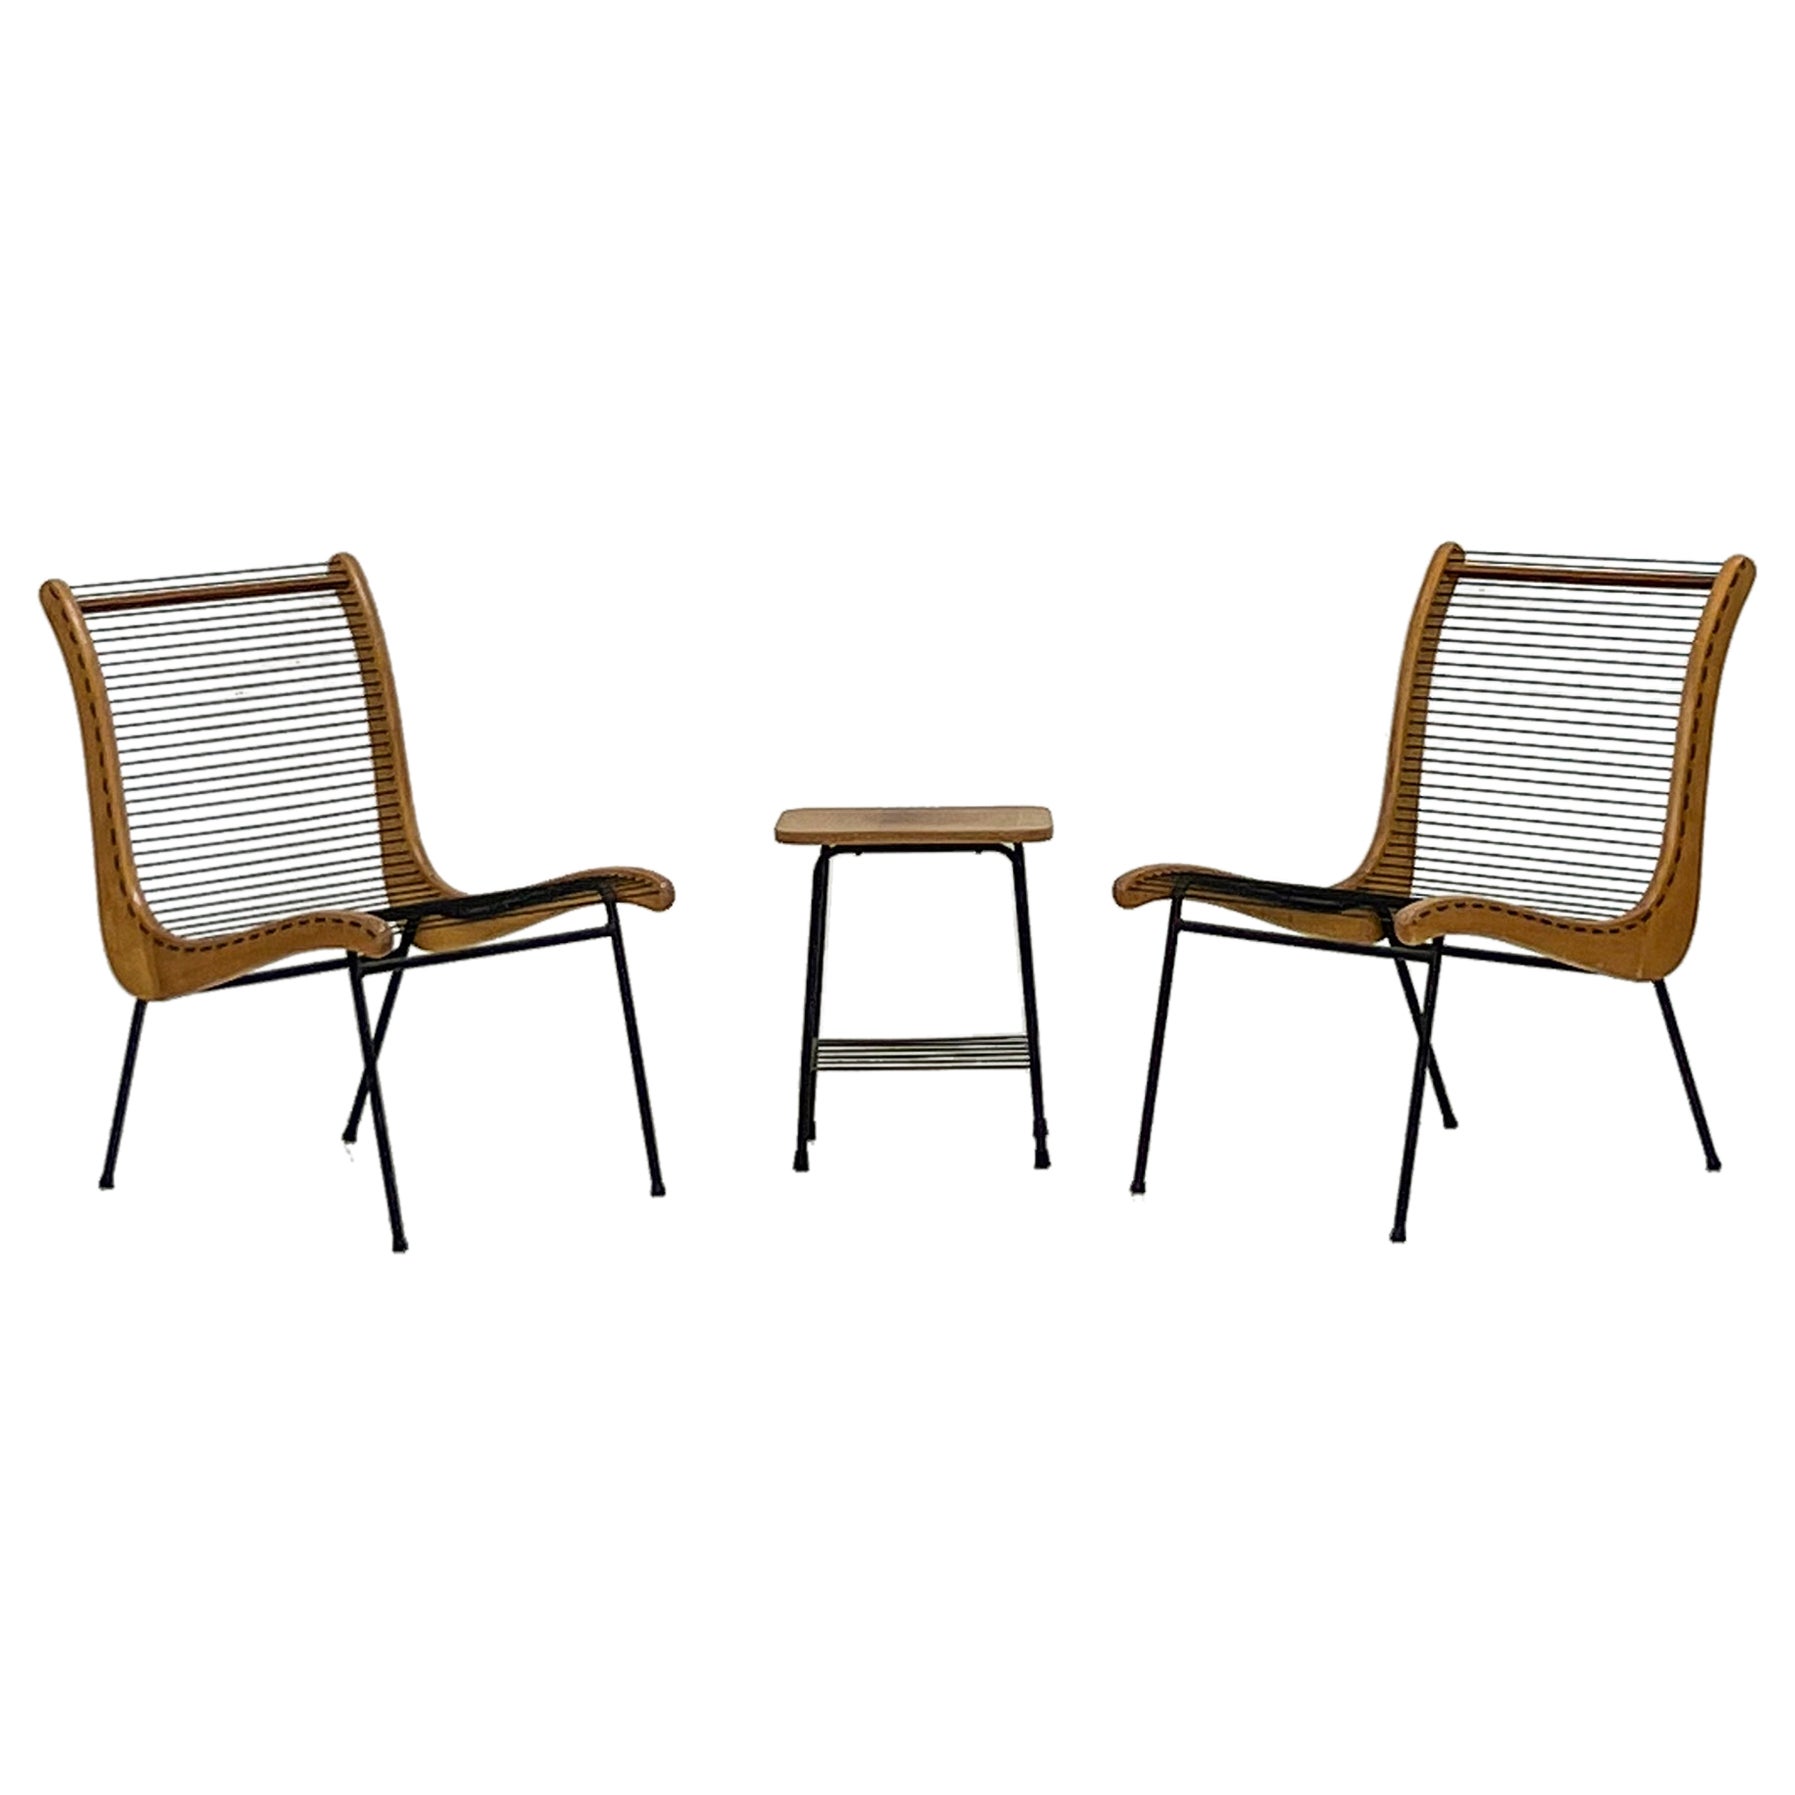 String Chairs mit passendem Tisch von Carl Koch, Vermont Tubbs, 1950er Jahre